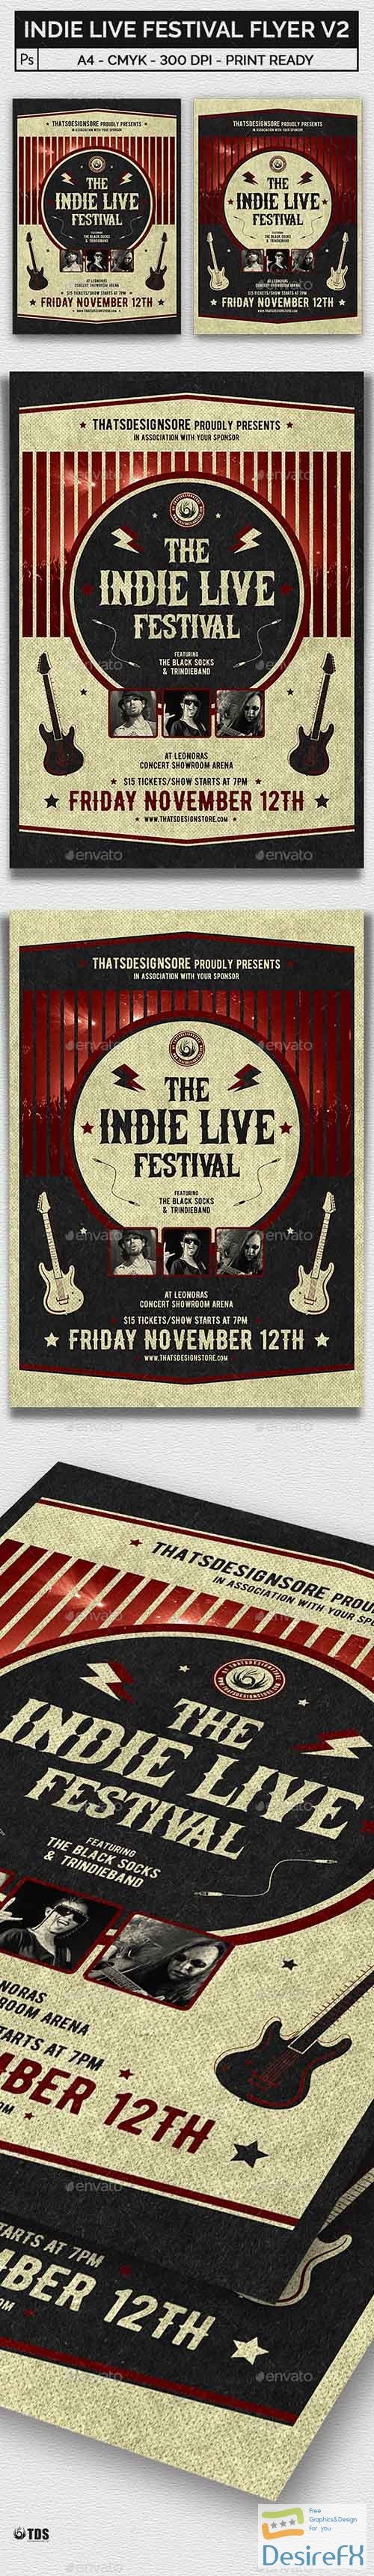 Indie Live Festival Flyer Template V2 21450189